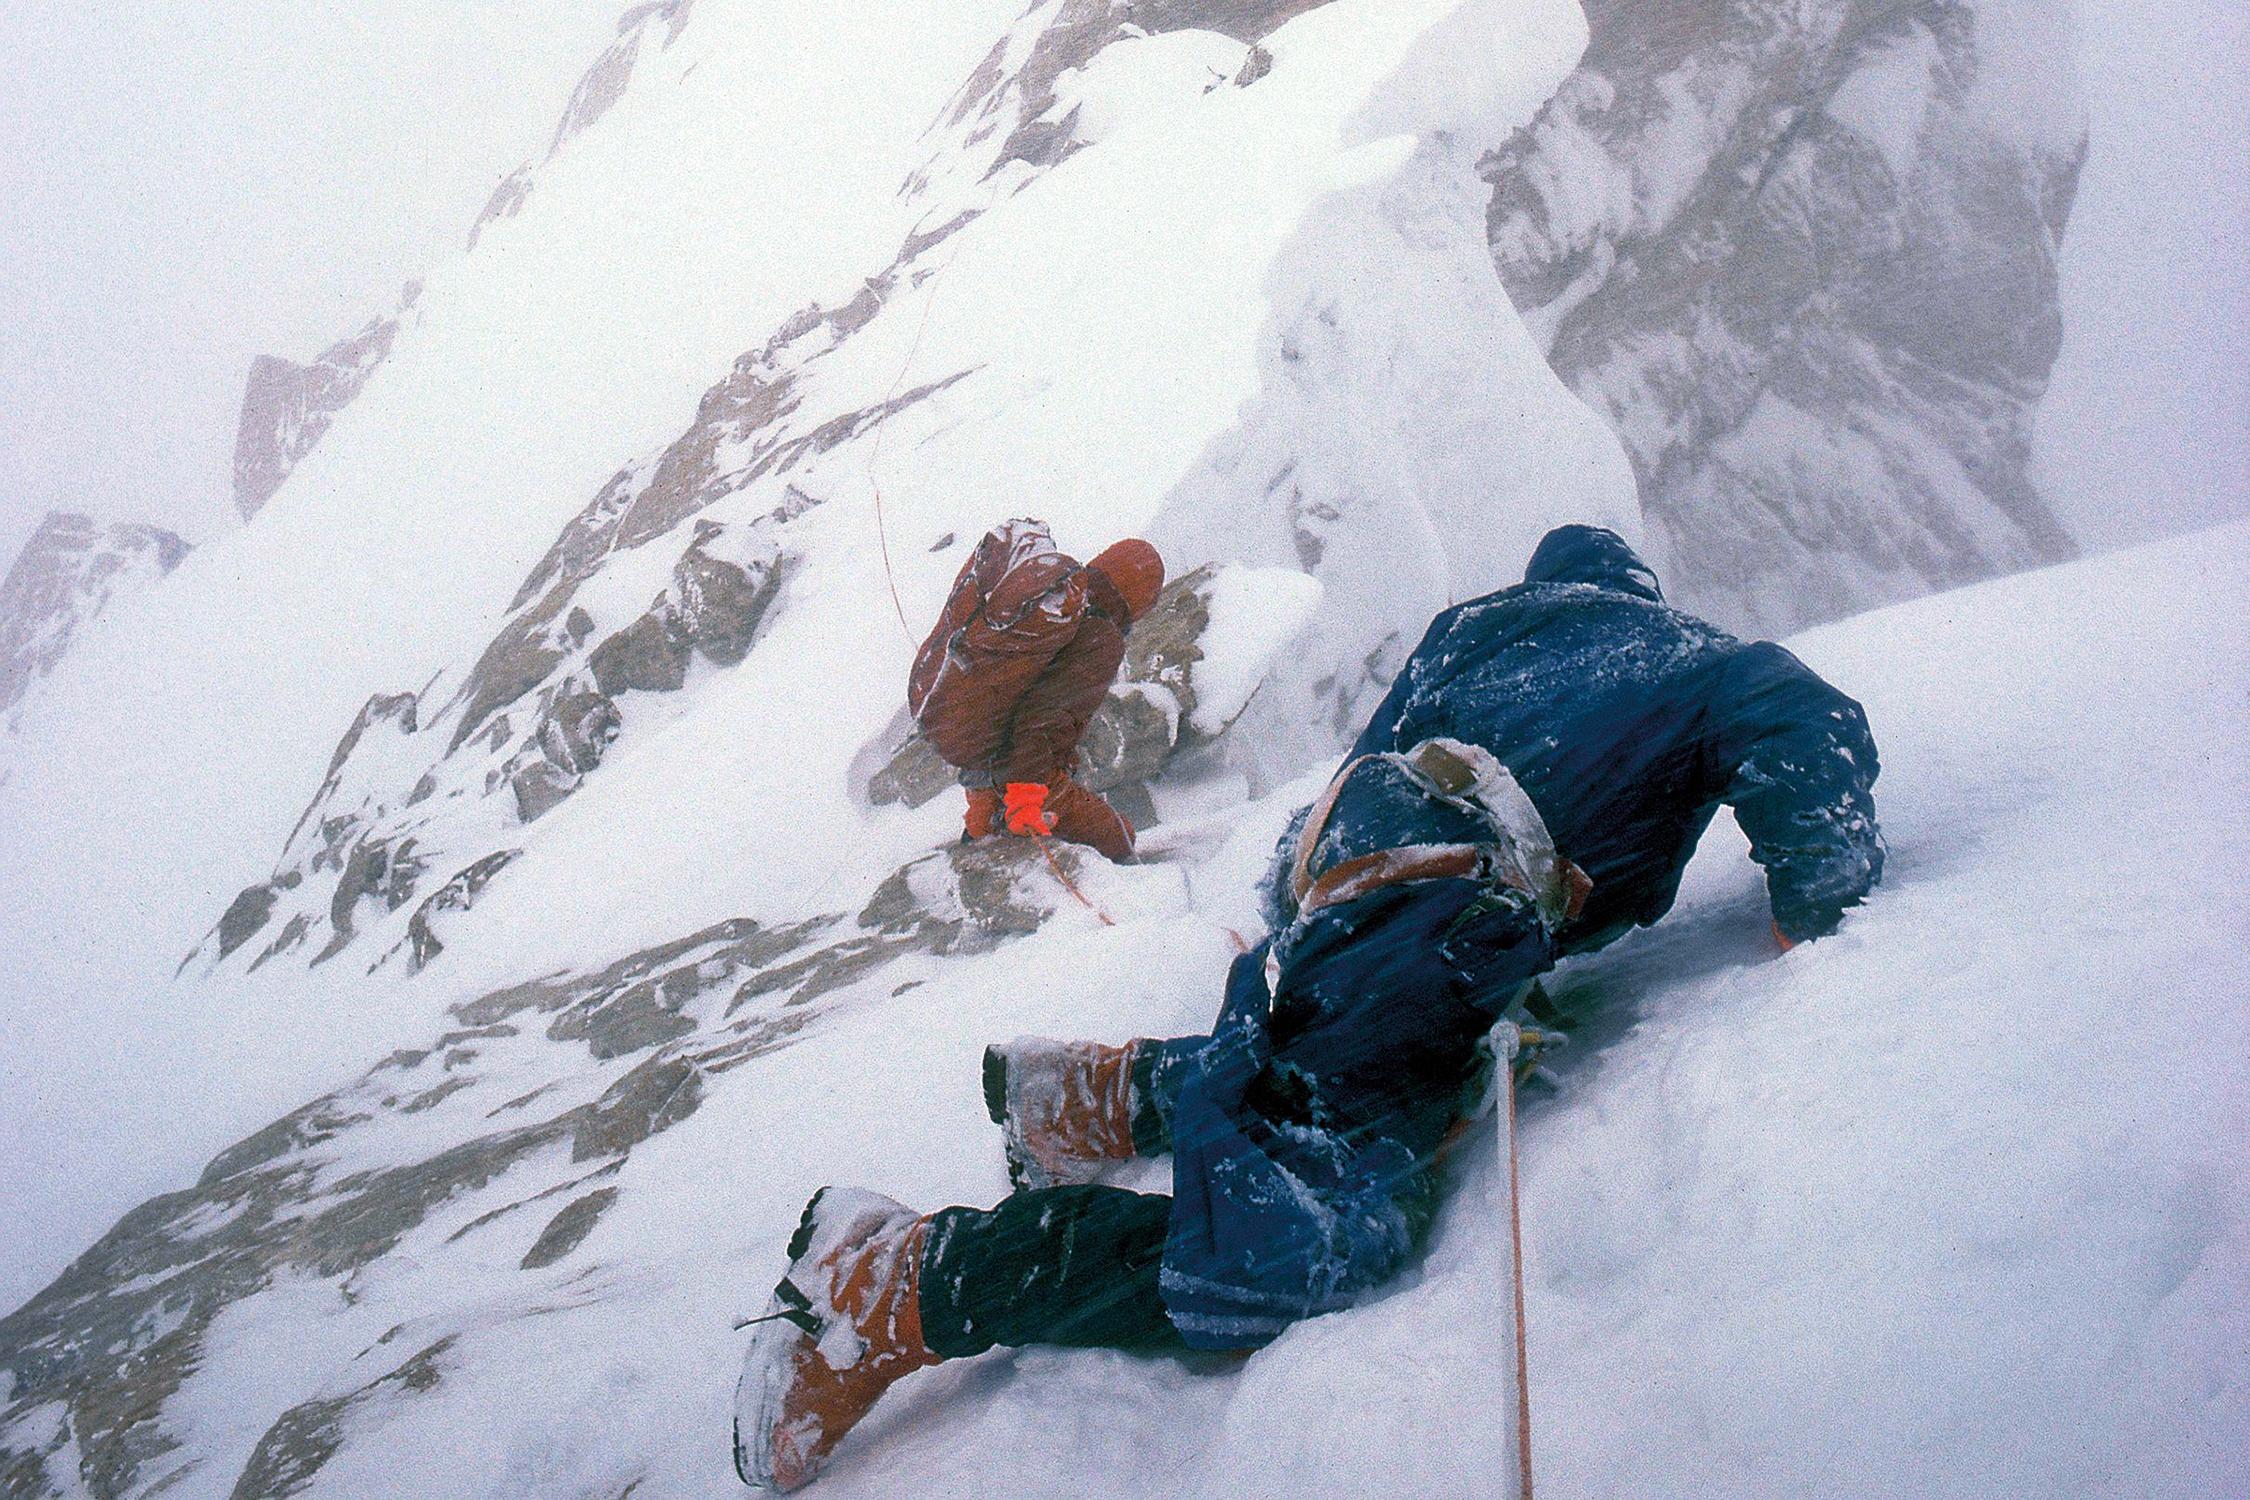 از معروفترین عکسهای تاریخ کوهنوردی، دوگ اسکات با دو پای شکسته در حال فرود از کوه بینتها براک ملقب به آدمخوار